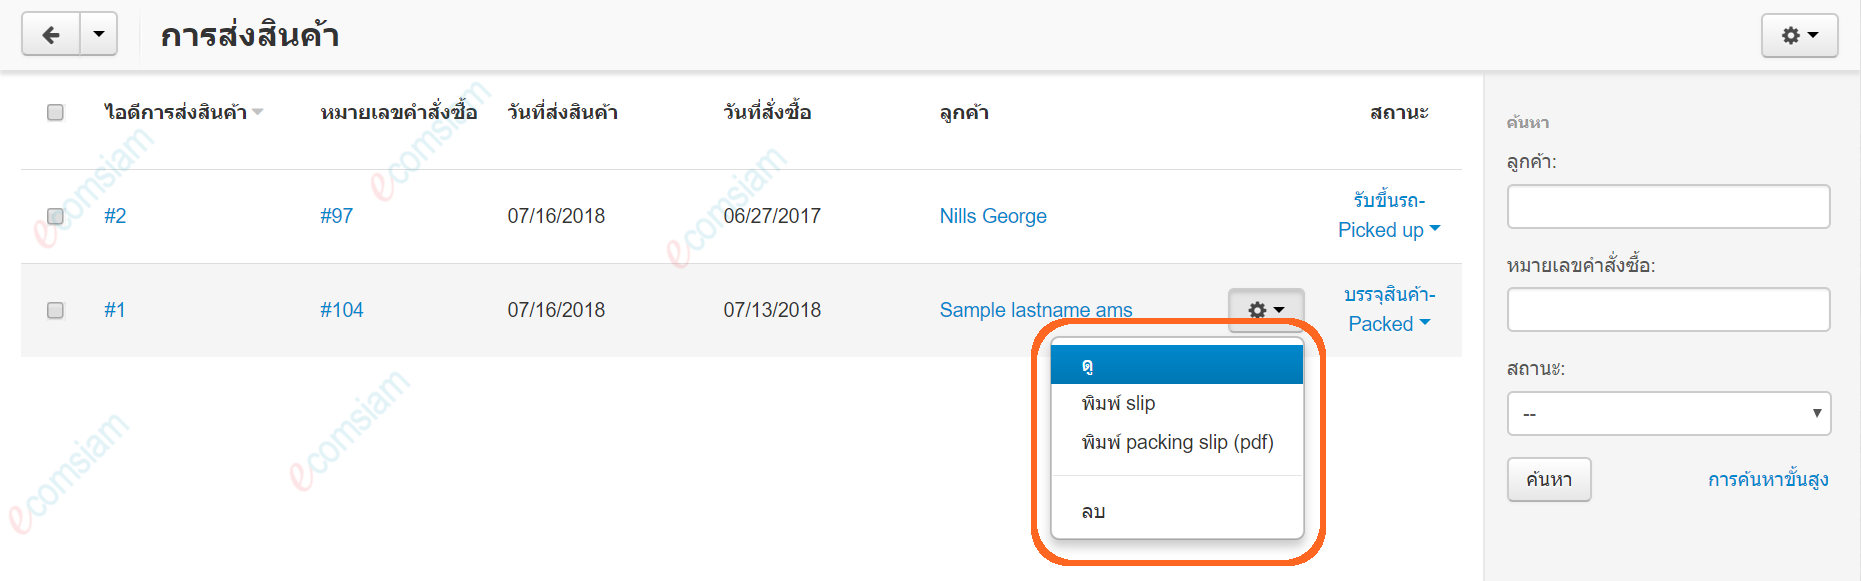 เว็บไซต์สำเร็จรูปไทย - คู่มือร้านออนไลน์ - สั่งซื้อ -  เรียกดูการจัดส่ง shipments